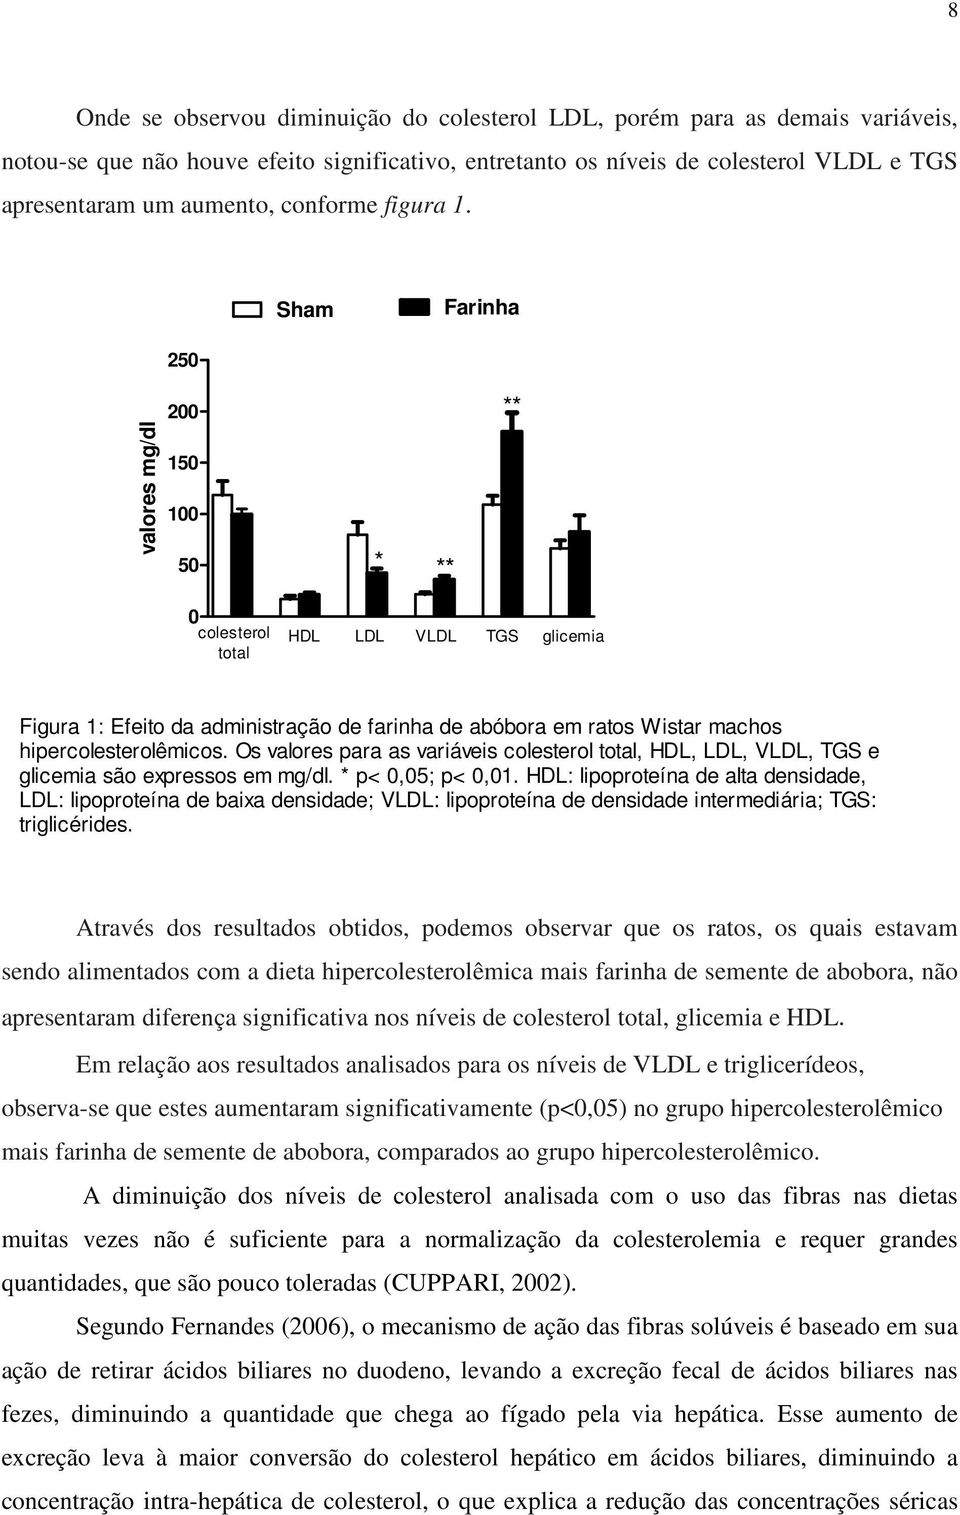 Sham Farinha 250 200 ** valores mg/dl 150 100 50 * ** 0 colesterol total HDL LDL VLDL TGS glicemia Figura 1: Efeito da administração de farinha de abóbora em ratos Wistar machos hipercolesterolêmicos.